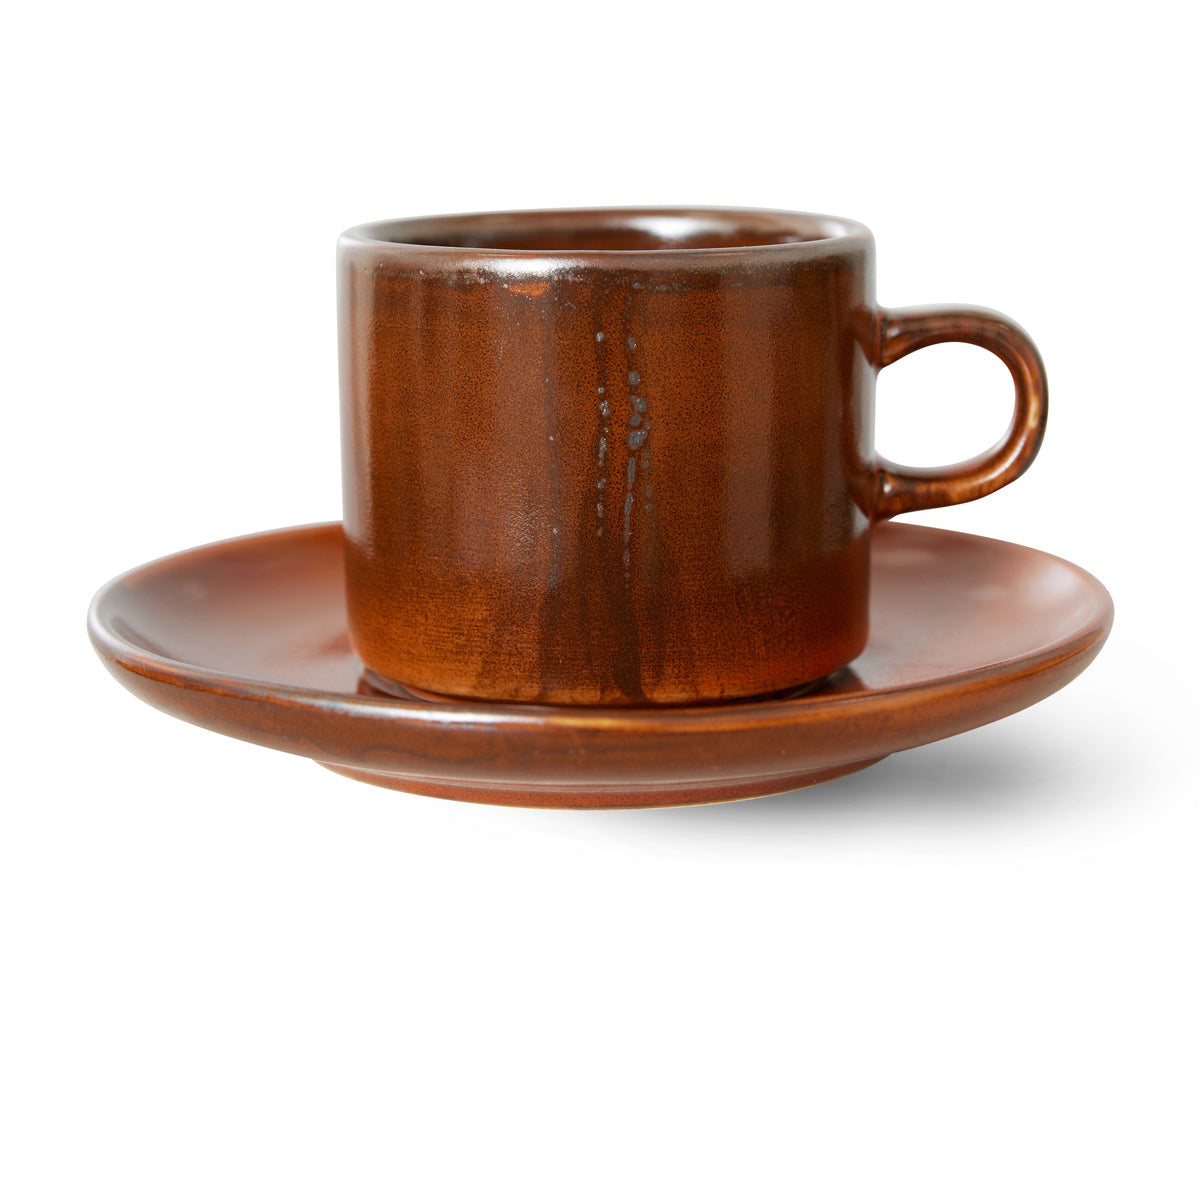 HkLiving Home Chef Ceramics: Cup & Saucer Burned Orange ACE7203